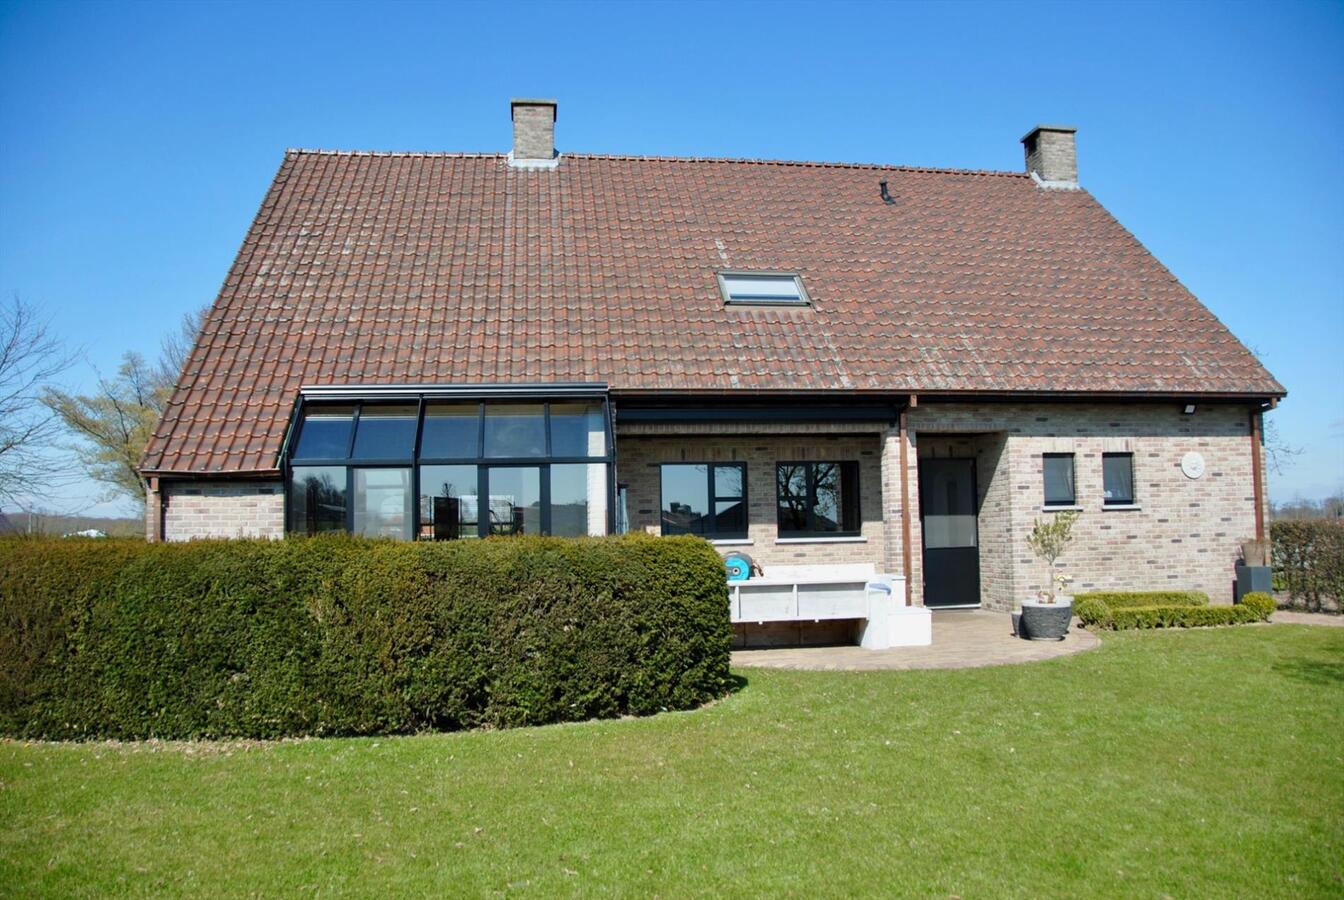 Property sold in Rijkevorsel